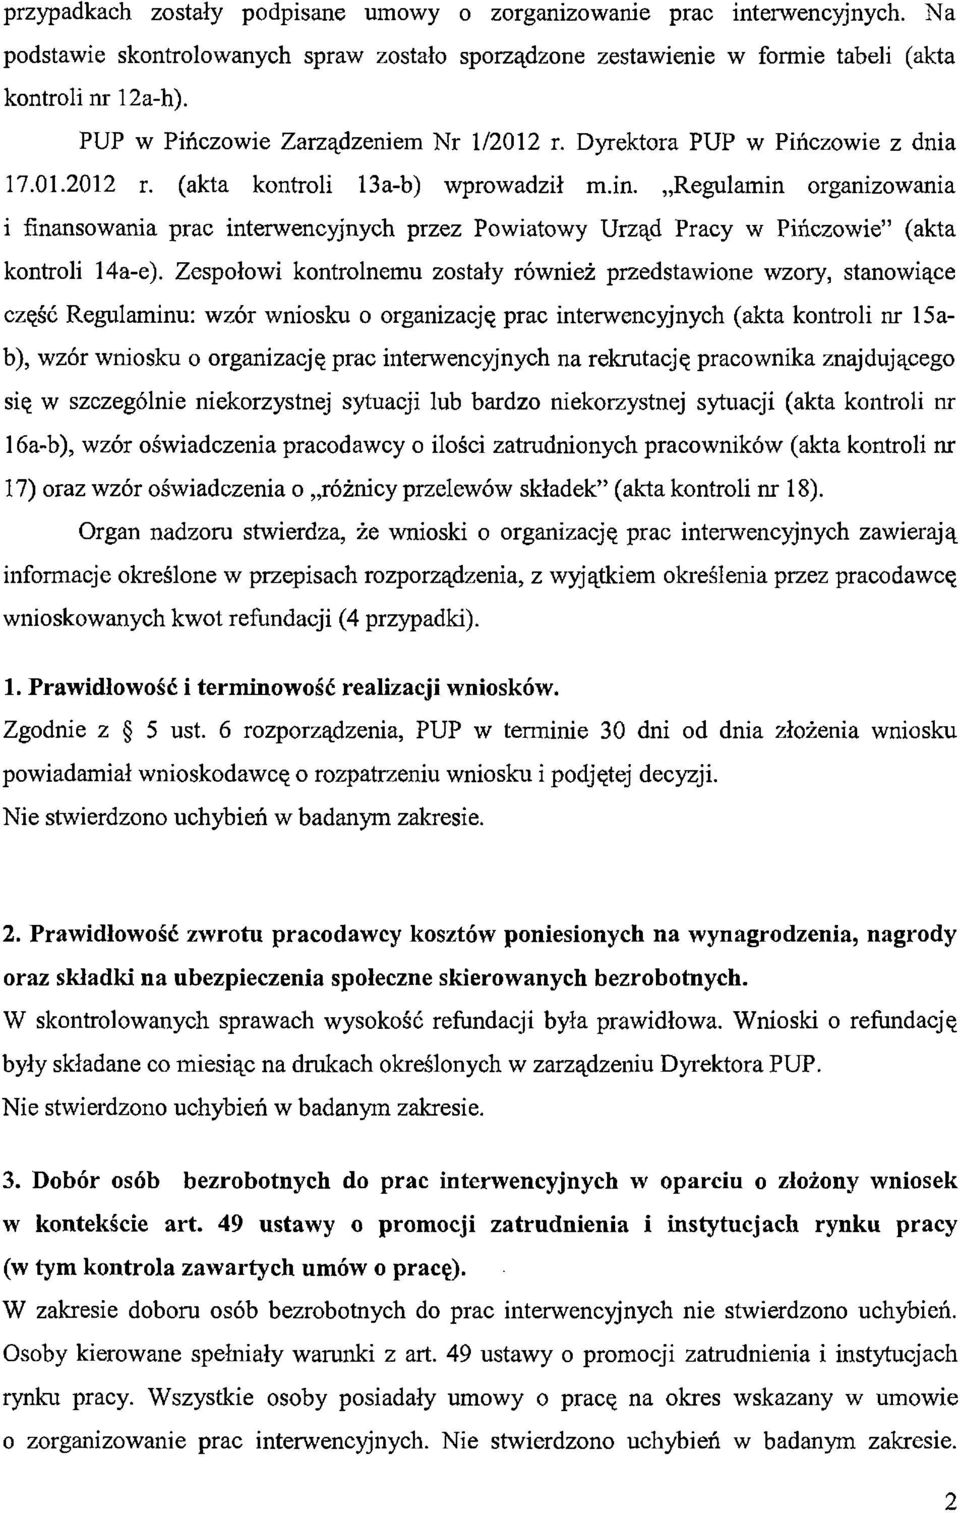 Regulamin organizowania i finansowania prac interwencyjnych przez Powiatowy Urząd Pracy w Pińczowie (akta kontroli 14a-e).